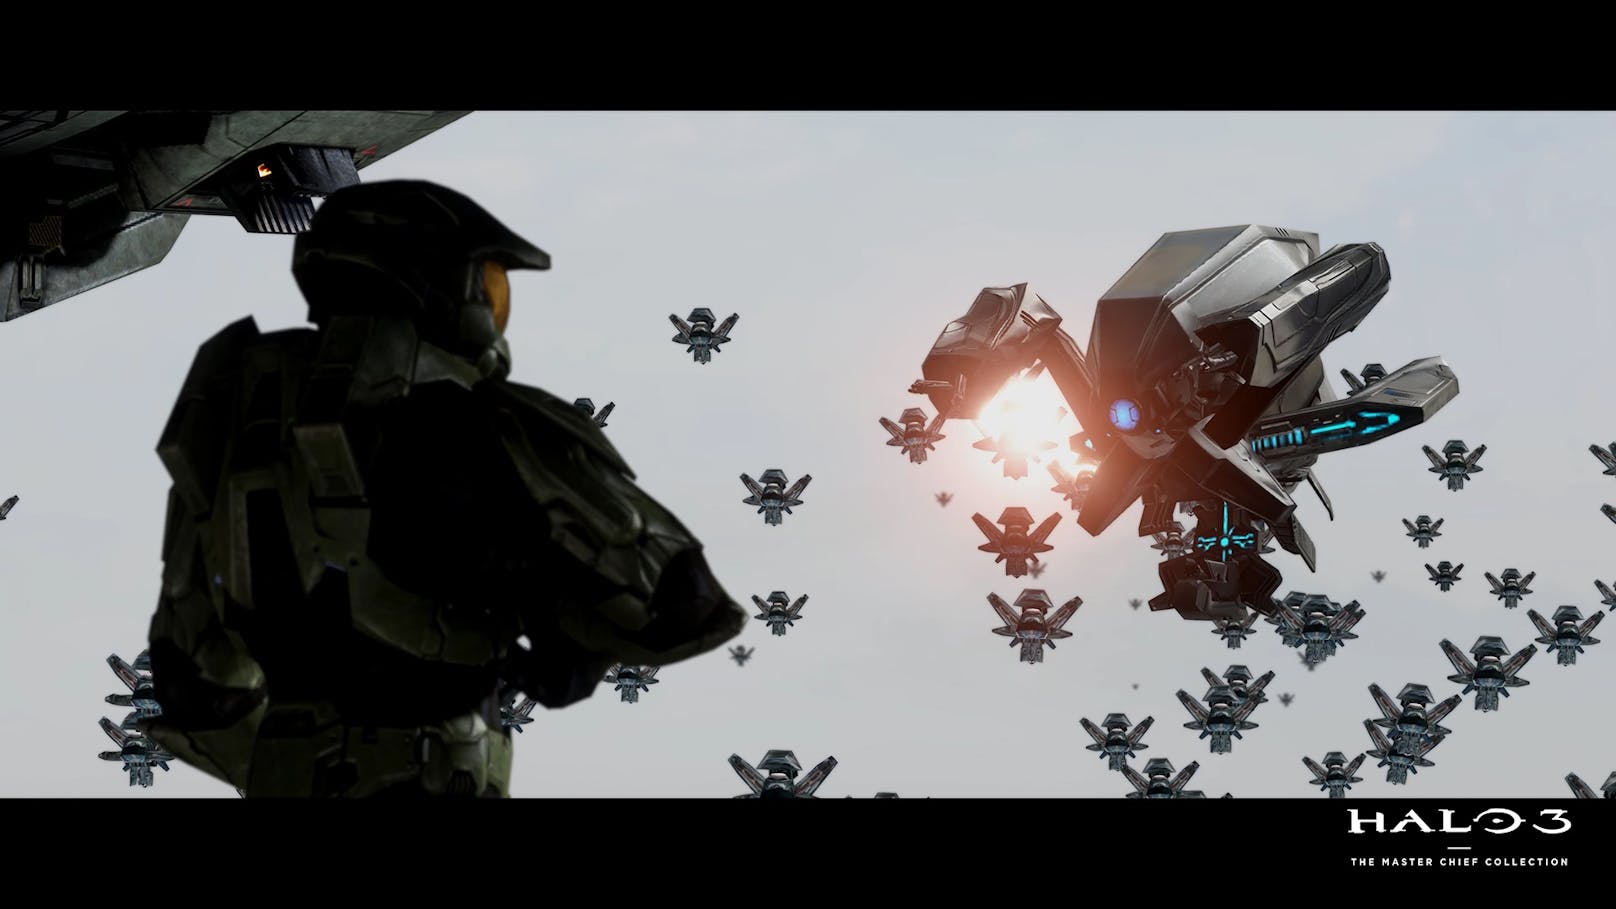 Spiele Halo 3 ab sofort als Teil der Halo: The Master Chief Collection für PC